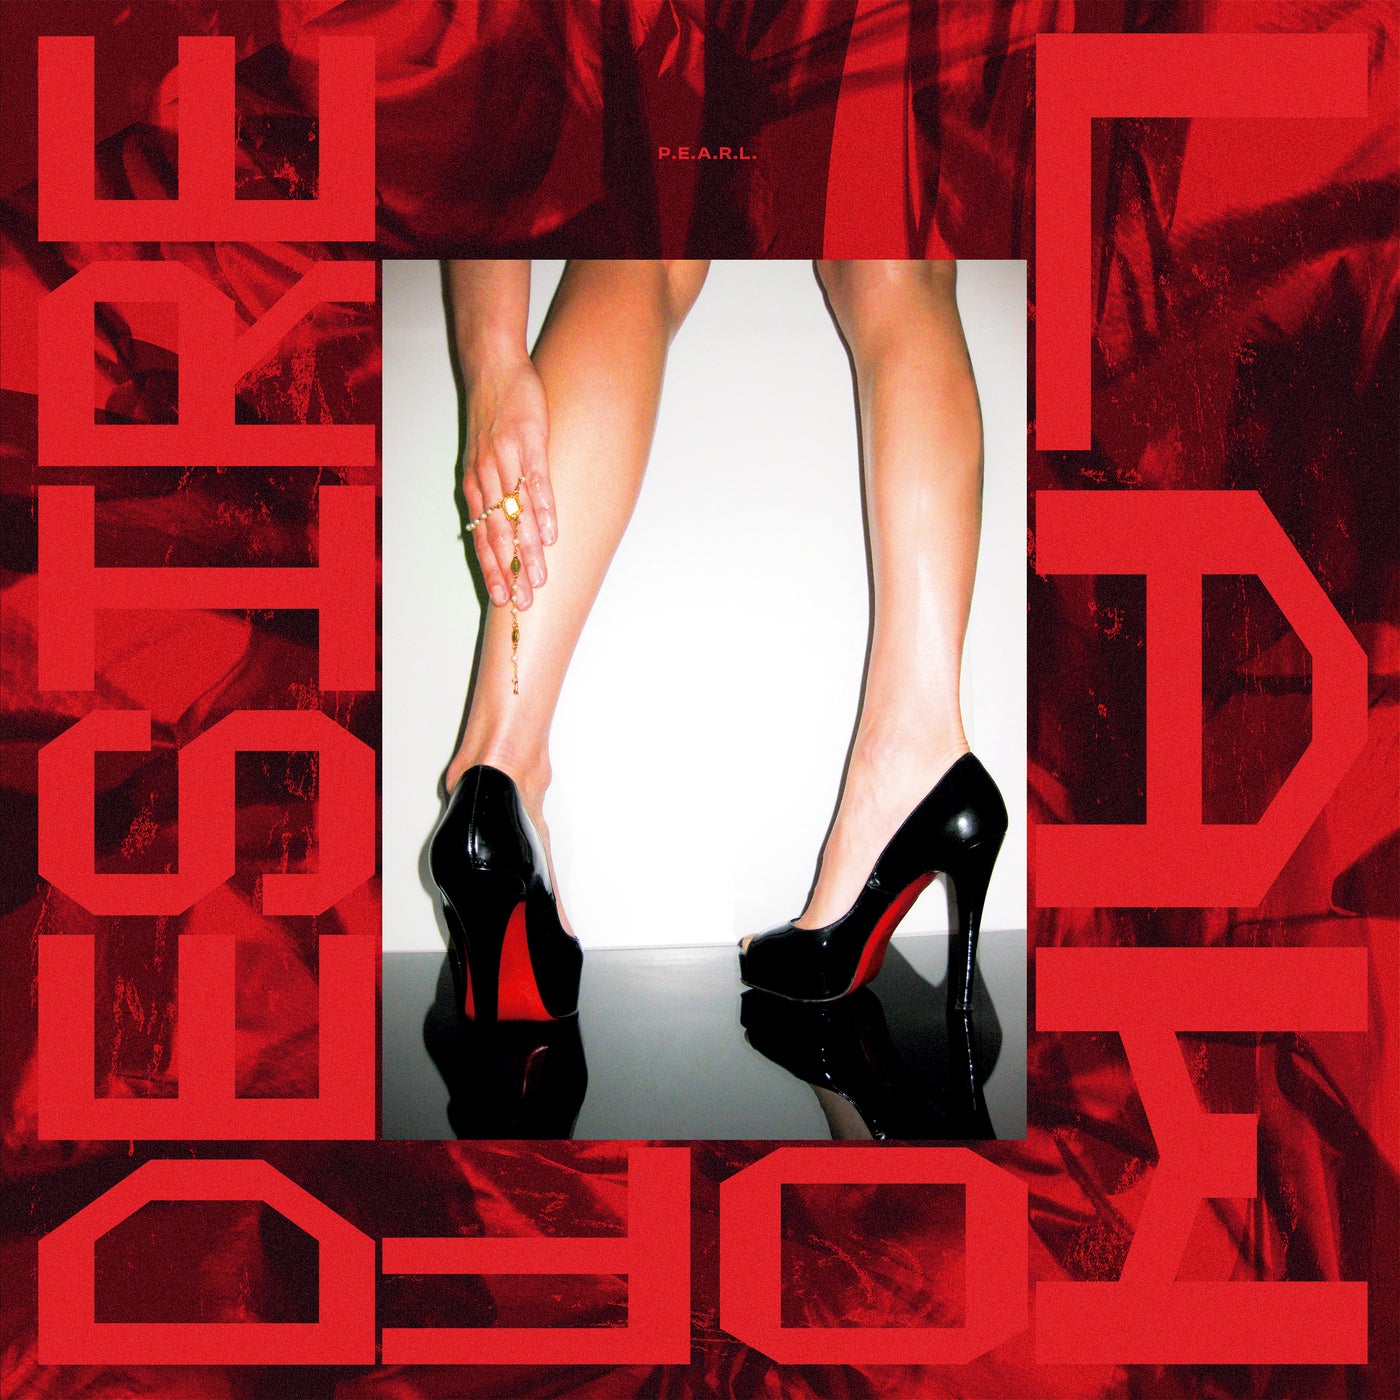 Cover - P.E.A.R.L. - High Heels (Original Mix)